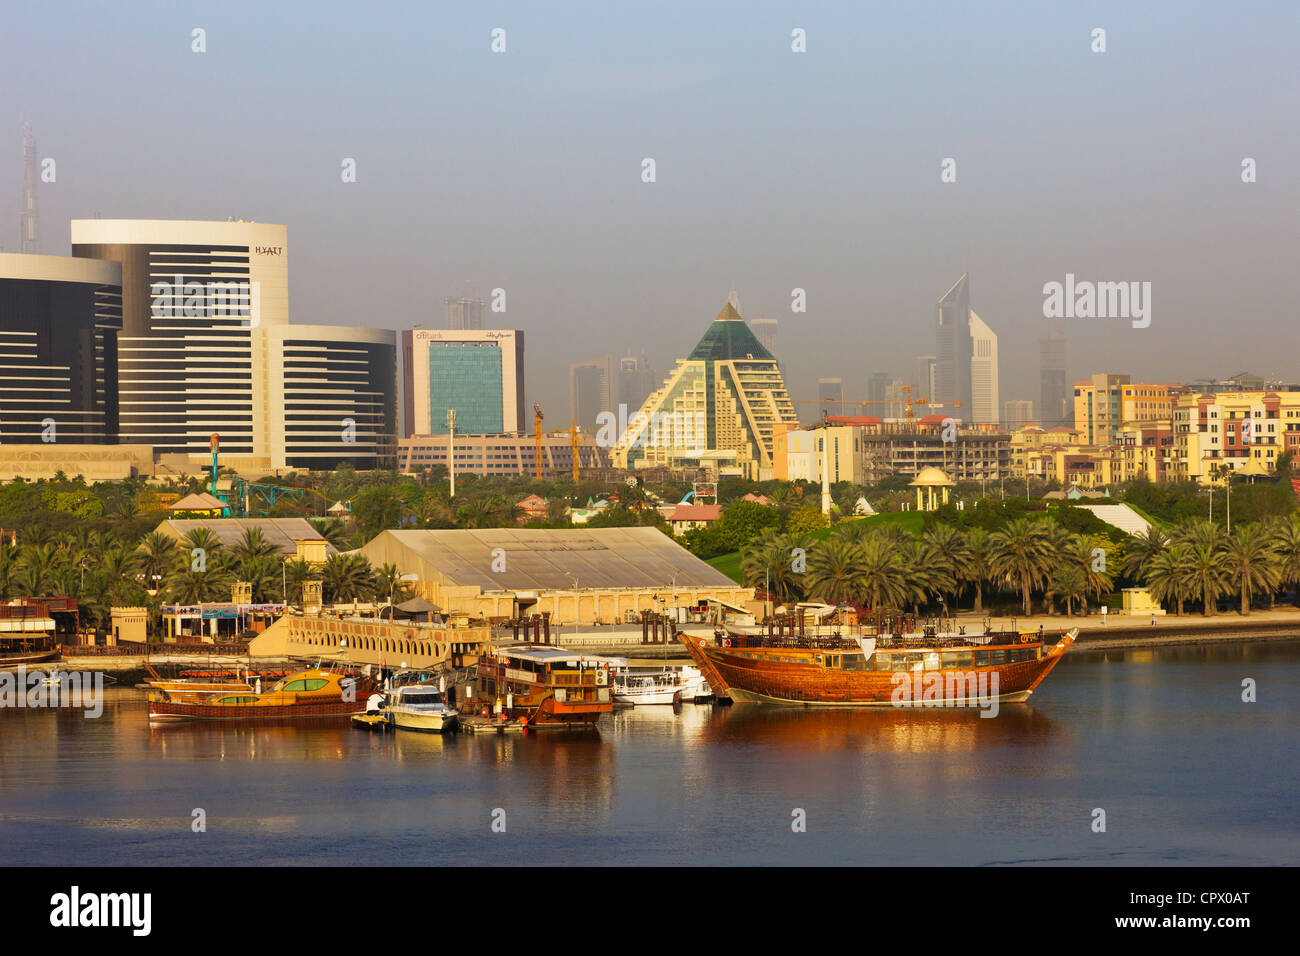 Skyline und Boote entlang der Khor Dubai (Dubai Creek), Dubai, Vereinigte Arabische Emirate Stockfoto